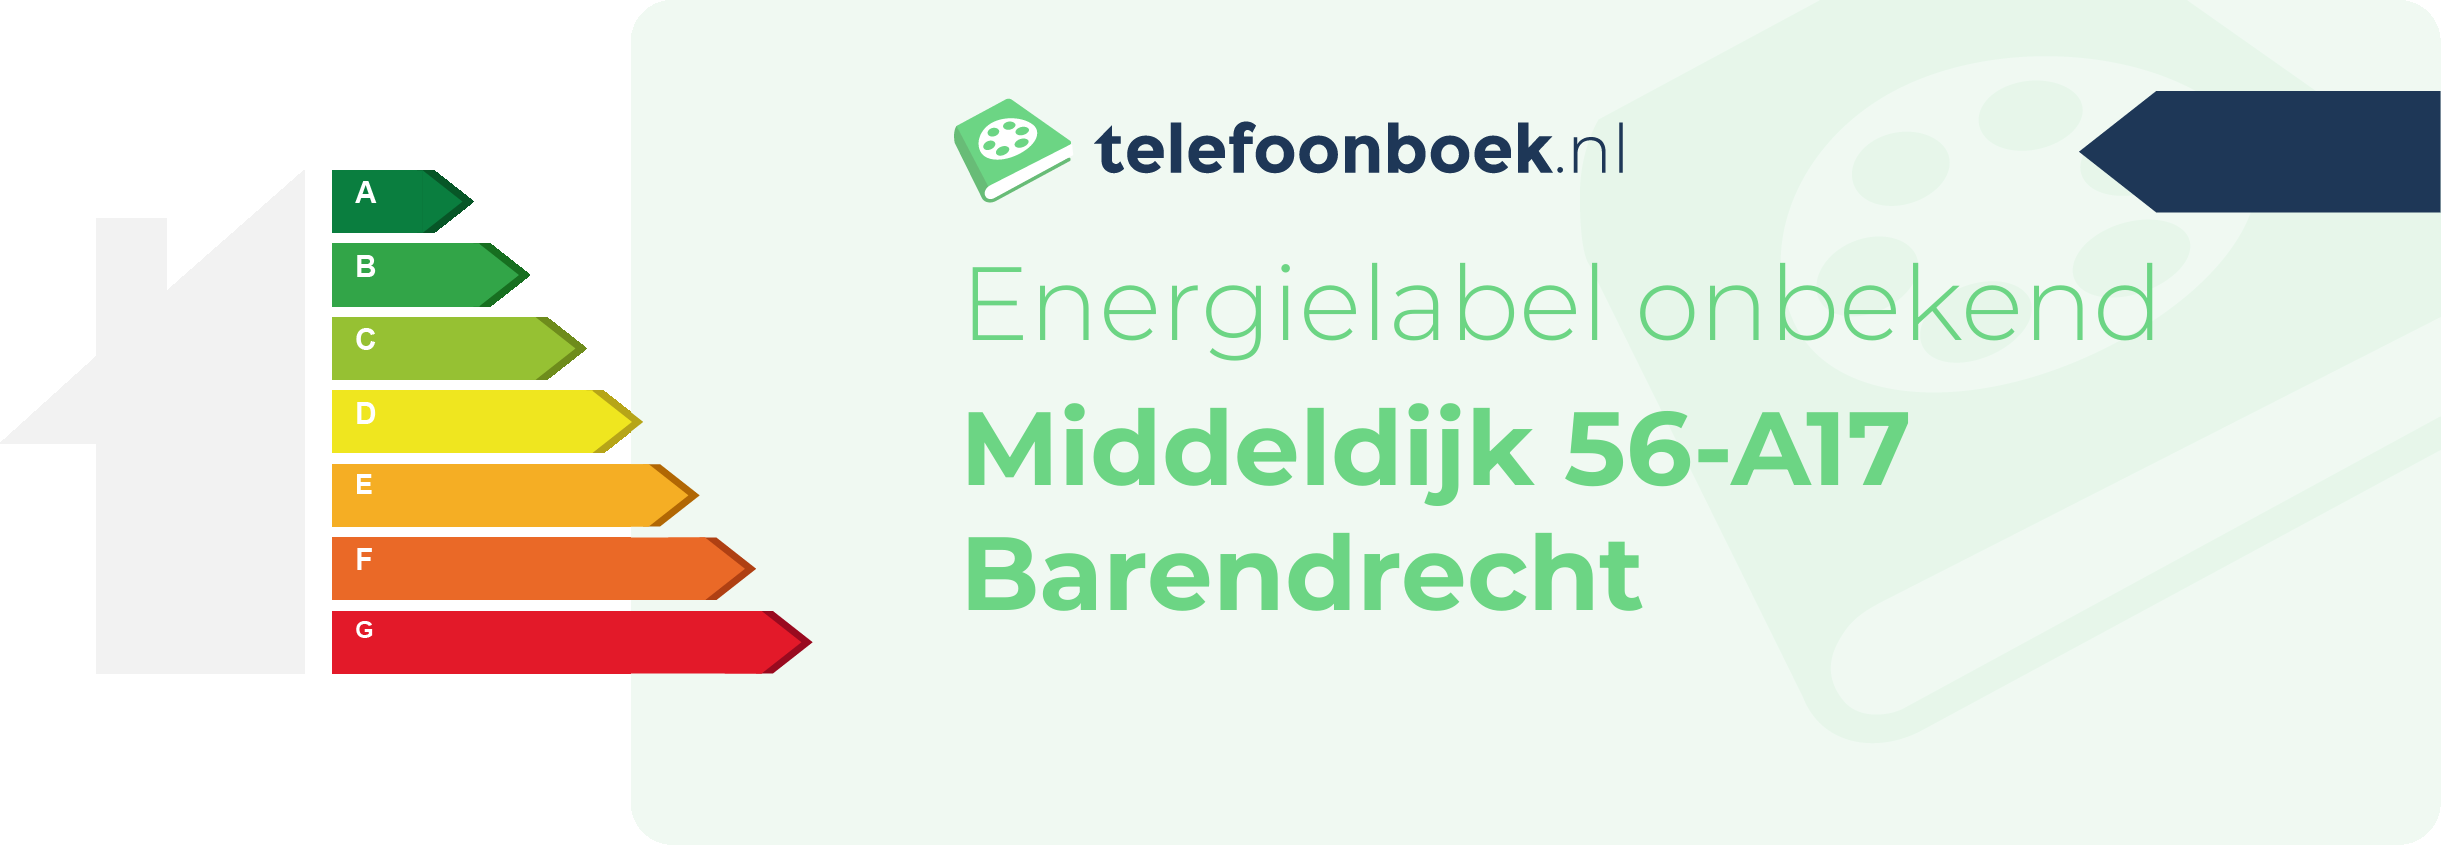 Energielabel Middeldijk 56-A17 Barendrecht